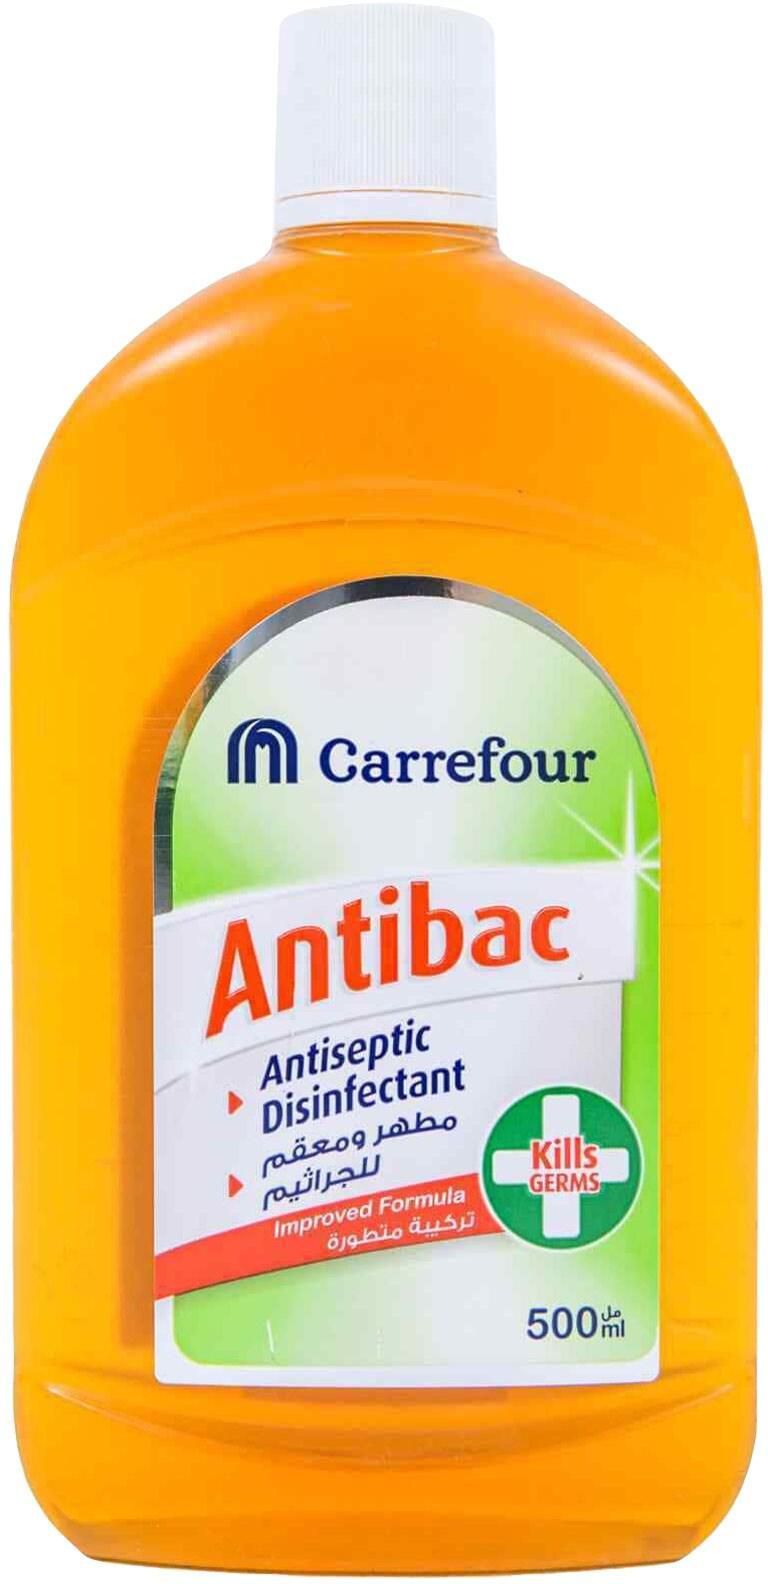 Carrefour Antiseptic Disinfectant Liquid 500ml